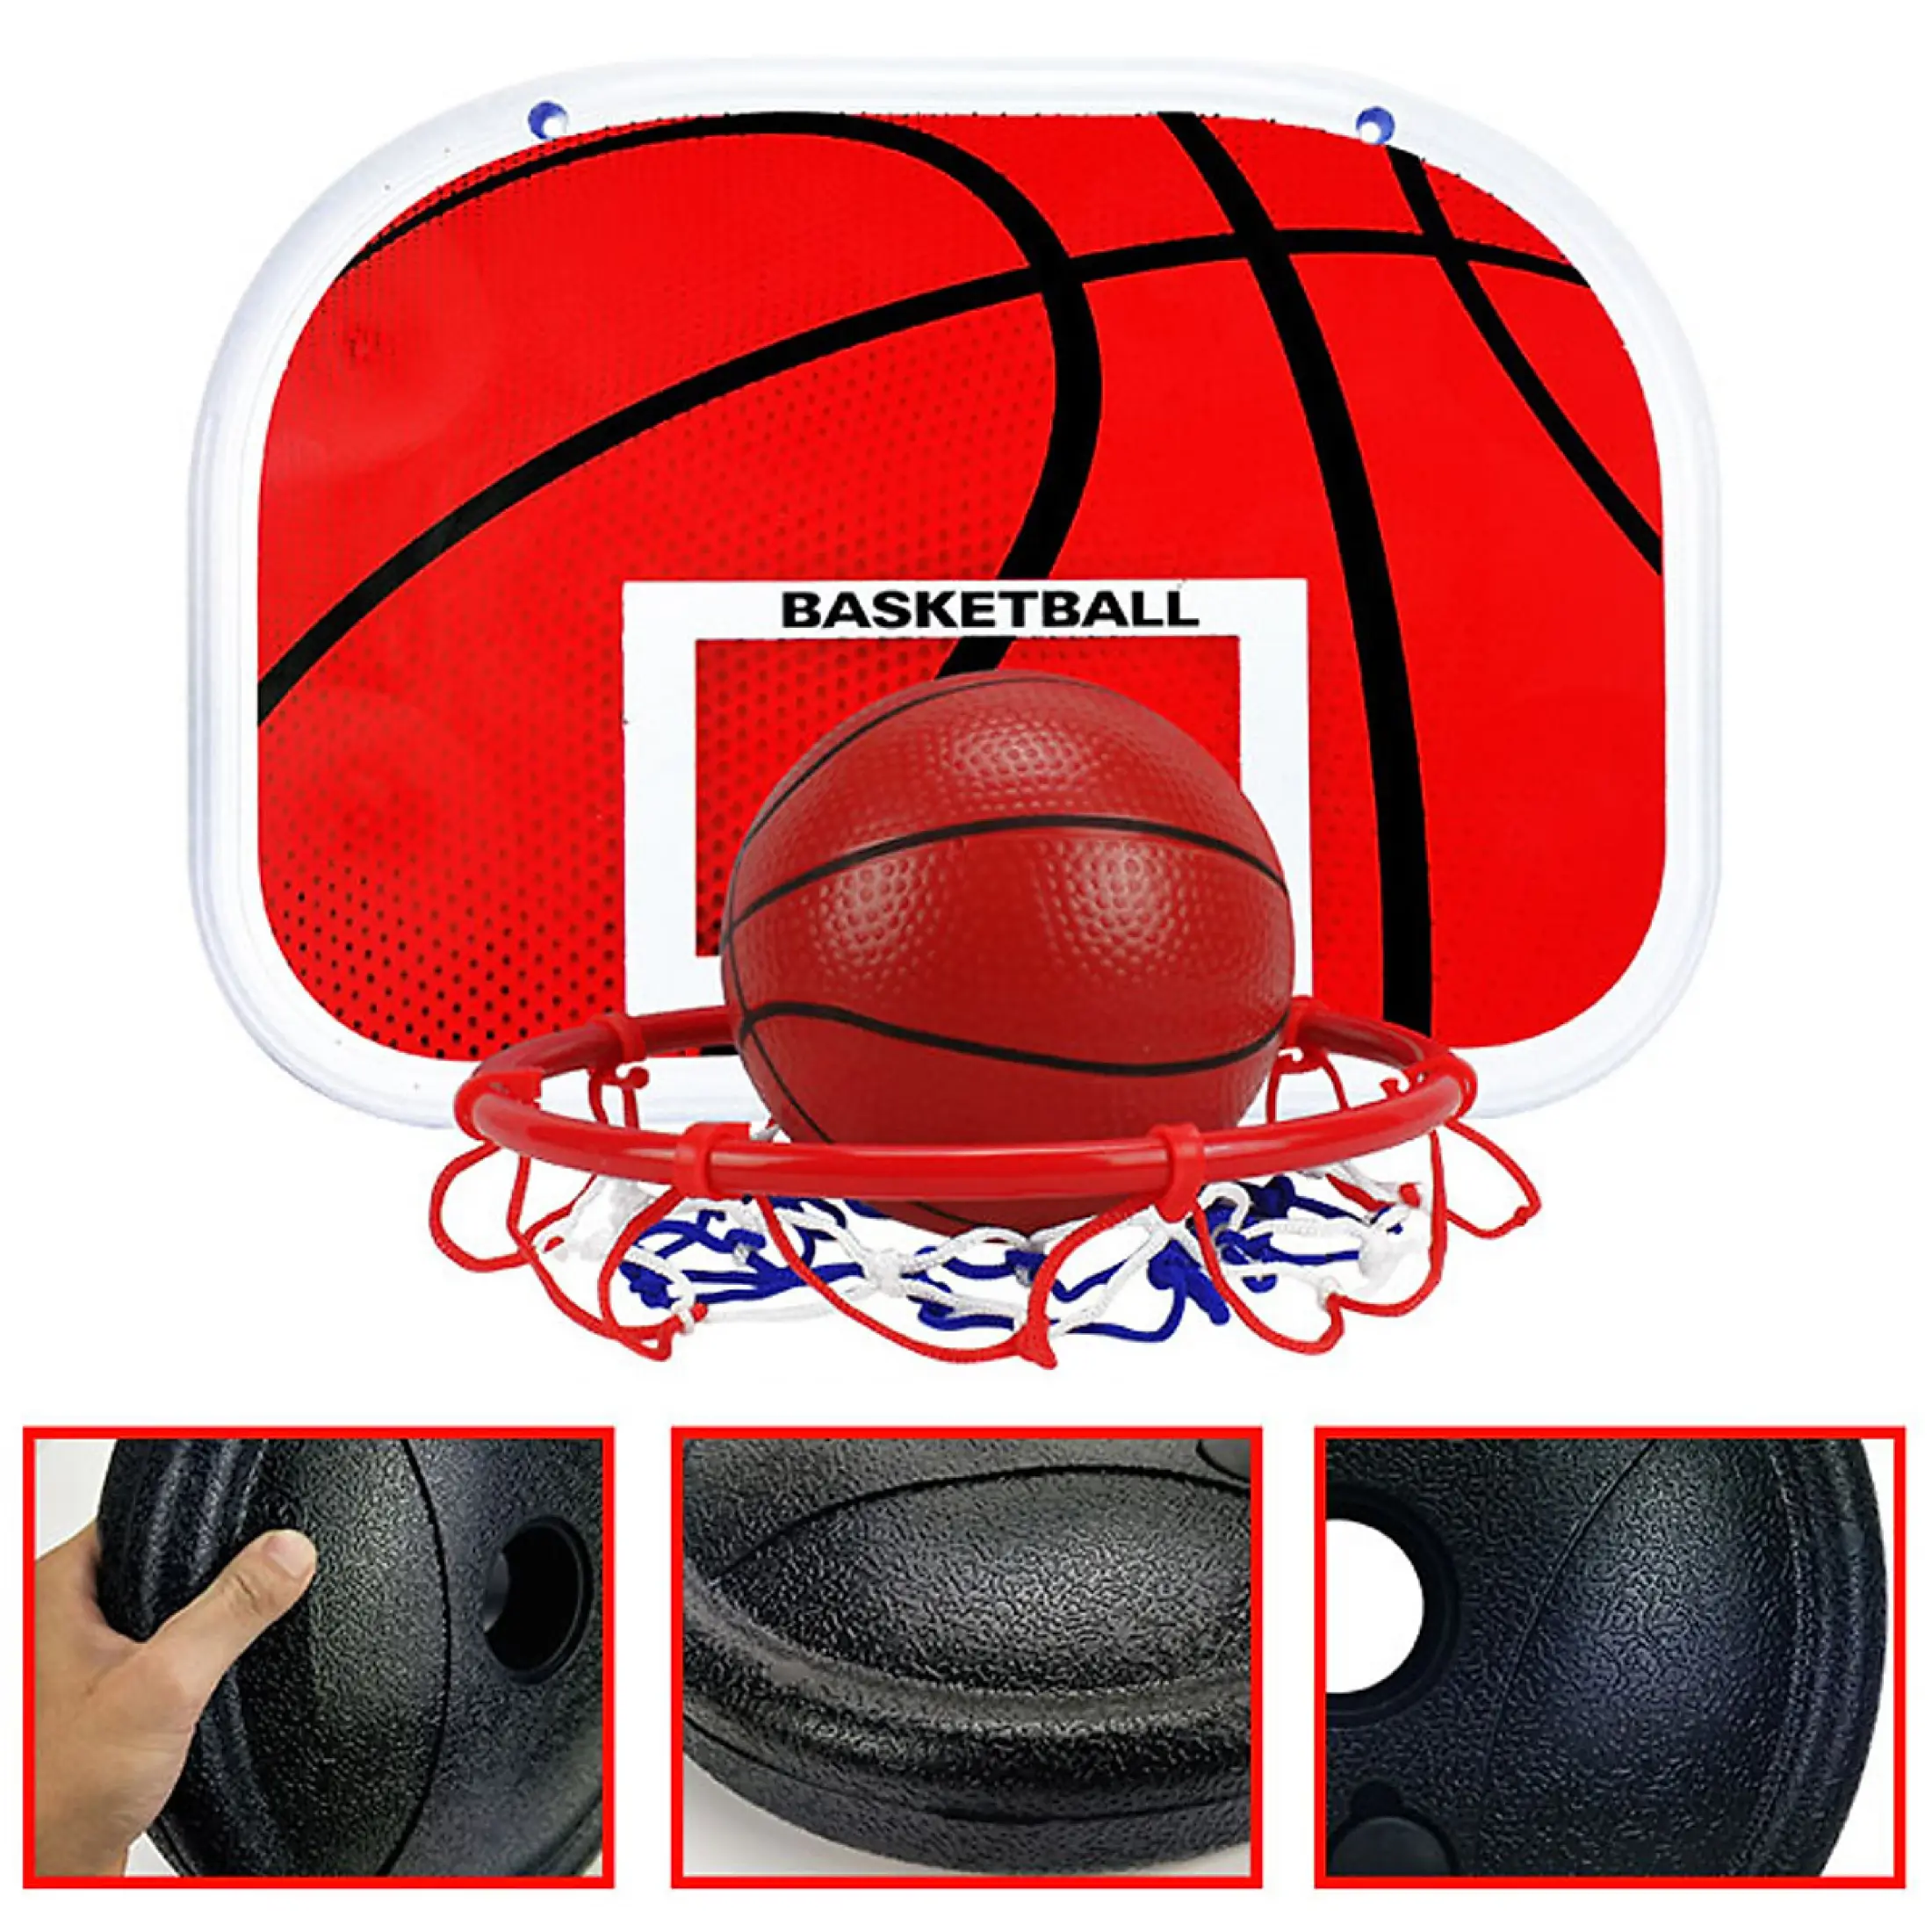 bộ đồ chơi bóng rổ điều chỉnh được chiều cao rèn luyện kỹ năng cho bé 5